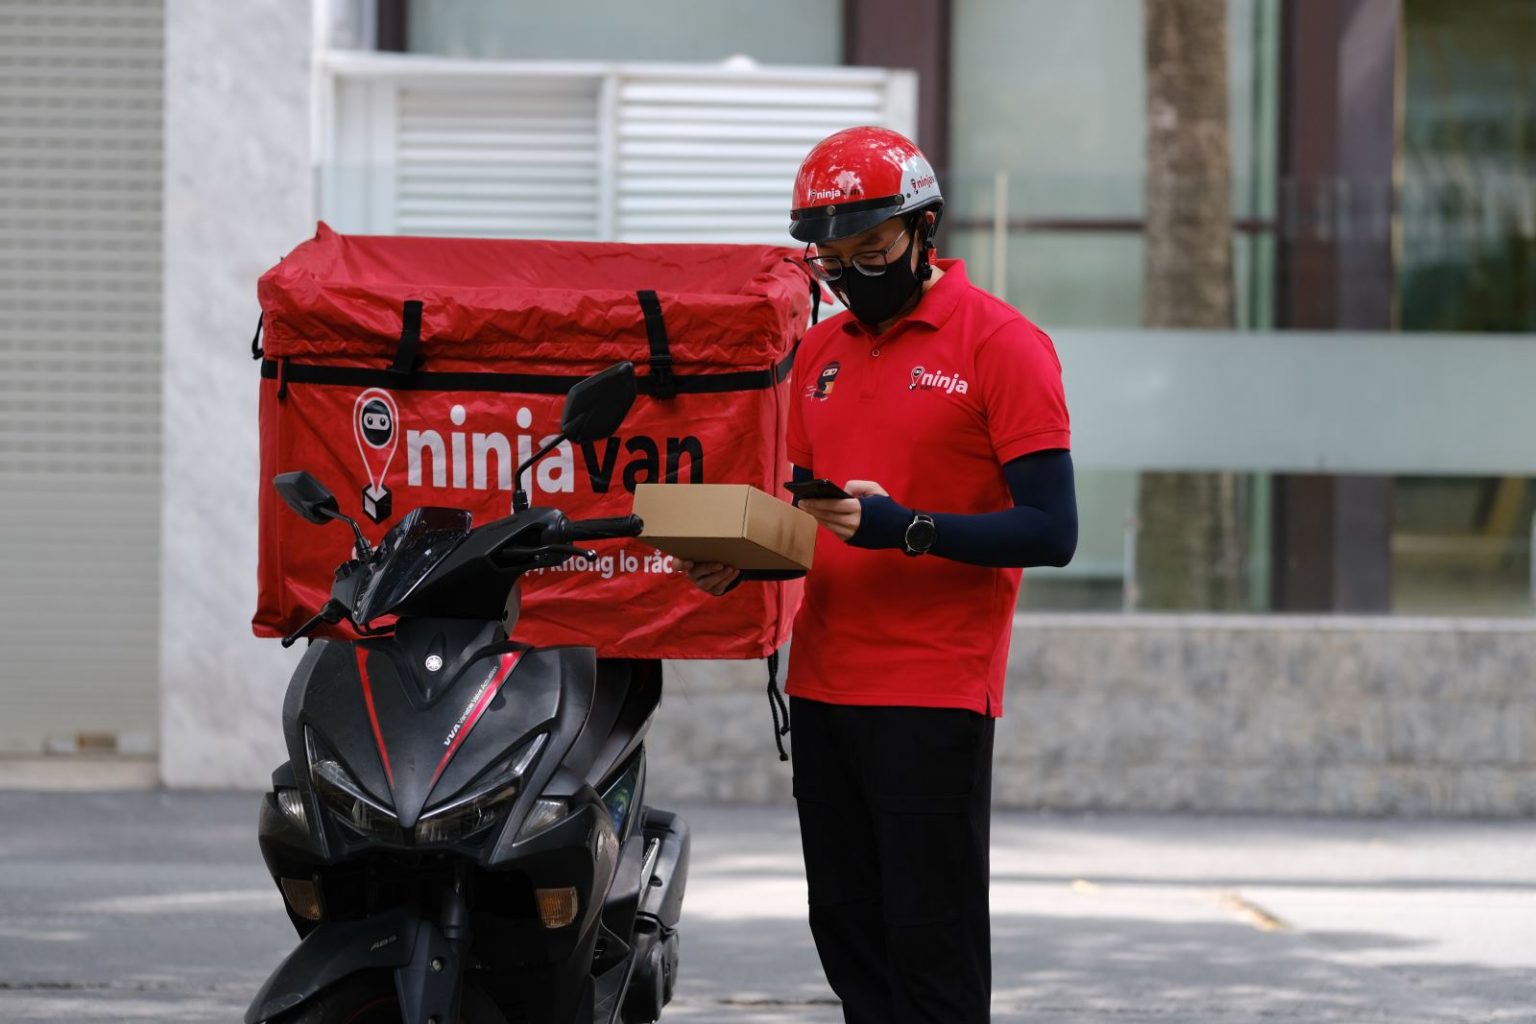 Ninja Van là hãng vận chuyển lớn và phổ biến trên khắp các đất nước châu Á